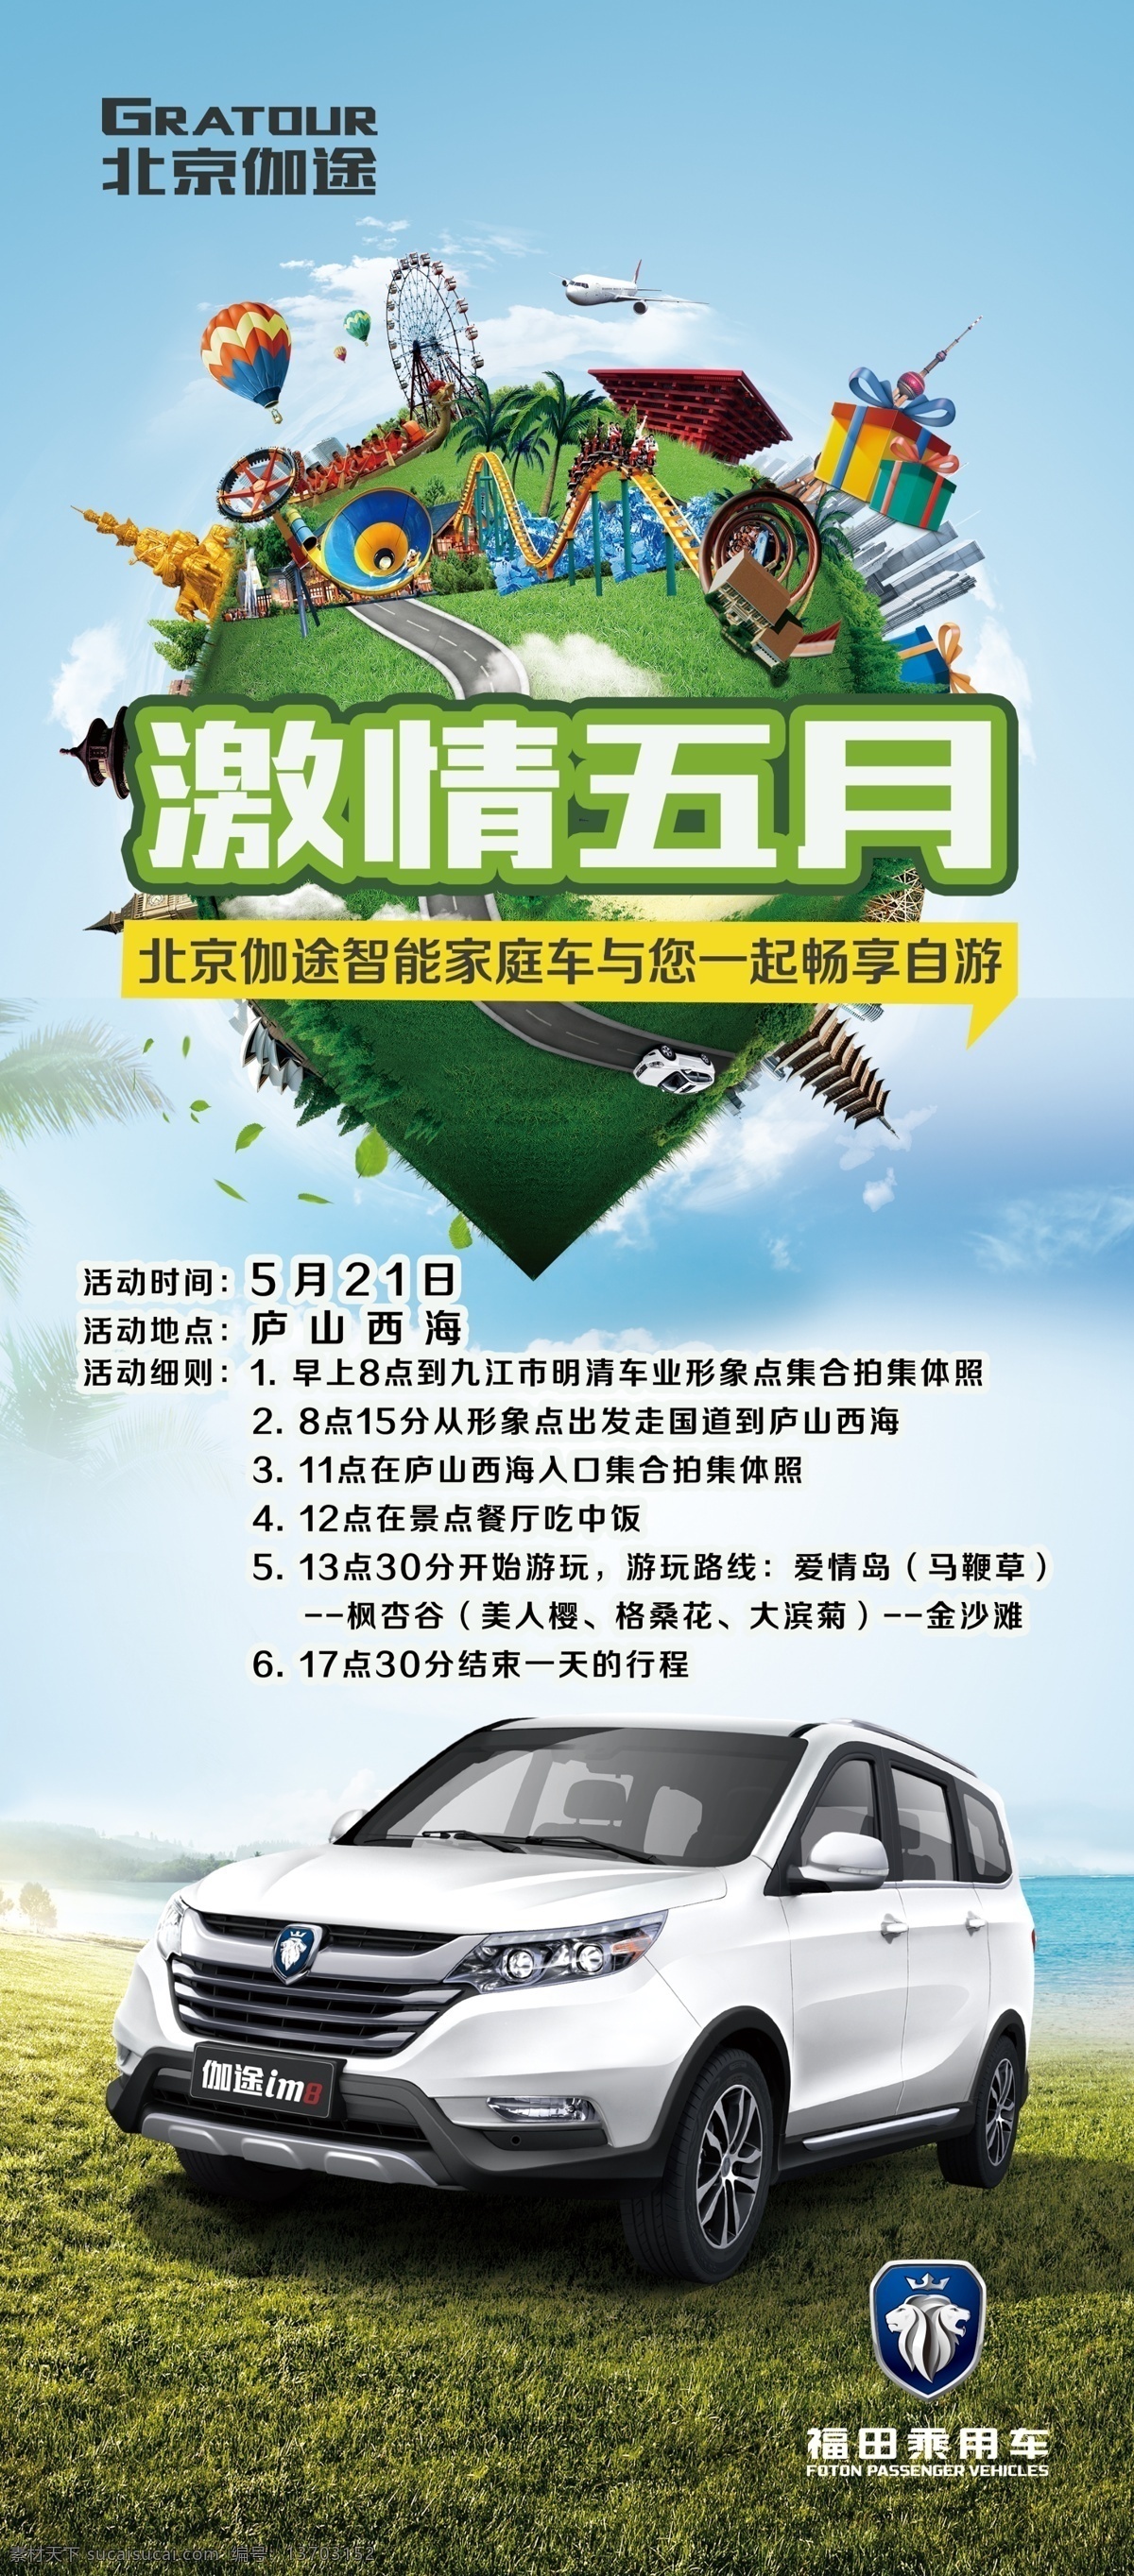 北京 伽 途 五 自驾游 北京伽途 五一 北京汽车 五一自驾游 激情五月 展架海报